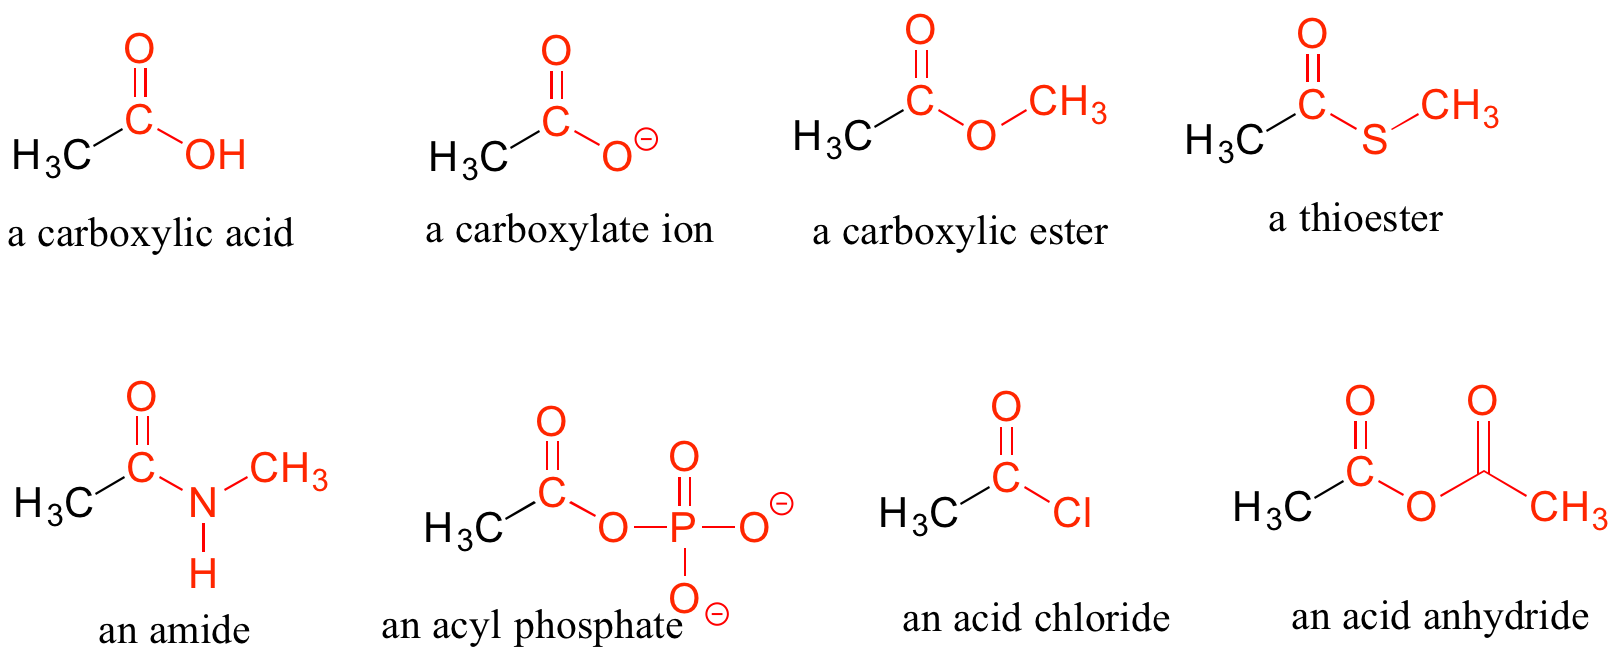 Derivados de ácido carboxílico. Ácido carboxílico: Carbono con doble enlace al oxígeno y unido simple a un carbono y un grupo hidroxi. Ion carboxilato: Carbono doble unido al oxígeno y unido simple a un carbono y un oxígeno. El oxígeno no está unido a un hidrógeno por lo que tiene una carga negativa. Éster carboxílico: carbono con doble enlace al oxígeno y unido simple a un carbono y un oxígeno. El oxígeno está unido a otro carbono. Tioéster: Carbono con doble enlace al oxígeno y unido simple a un carbono y un azufre. El azufre está unido a otro carbono. Amida: Carbono doble unido al oxígeno y unido simple a un carbono y un nitrógeno. El nitrógeno está unido a otro carbono y un hidrógeno. Fosfato de acilo: carbono con doble enlace al oxígeno y unido simple a un carbono y un oxígeno. El oxígeno es parte de un grupo fosfato. Cloruro de ácido: Carbono doble unido al oxígeno y unido simple a un carbono y un cloro. Anhídrido de ácido: Carbono con doble enlace a un oxígeno y un solo enlace a un carbono y un oxígeno. El oxígeno está unido a otro carbono con un oxígeno de doble enlace.